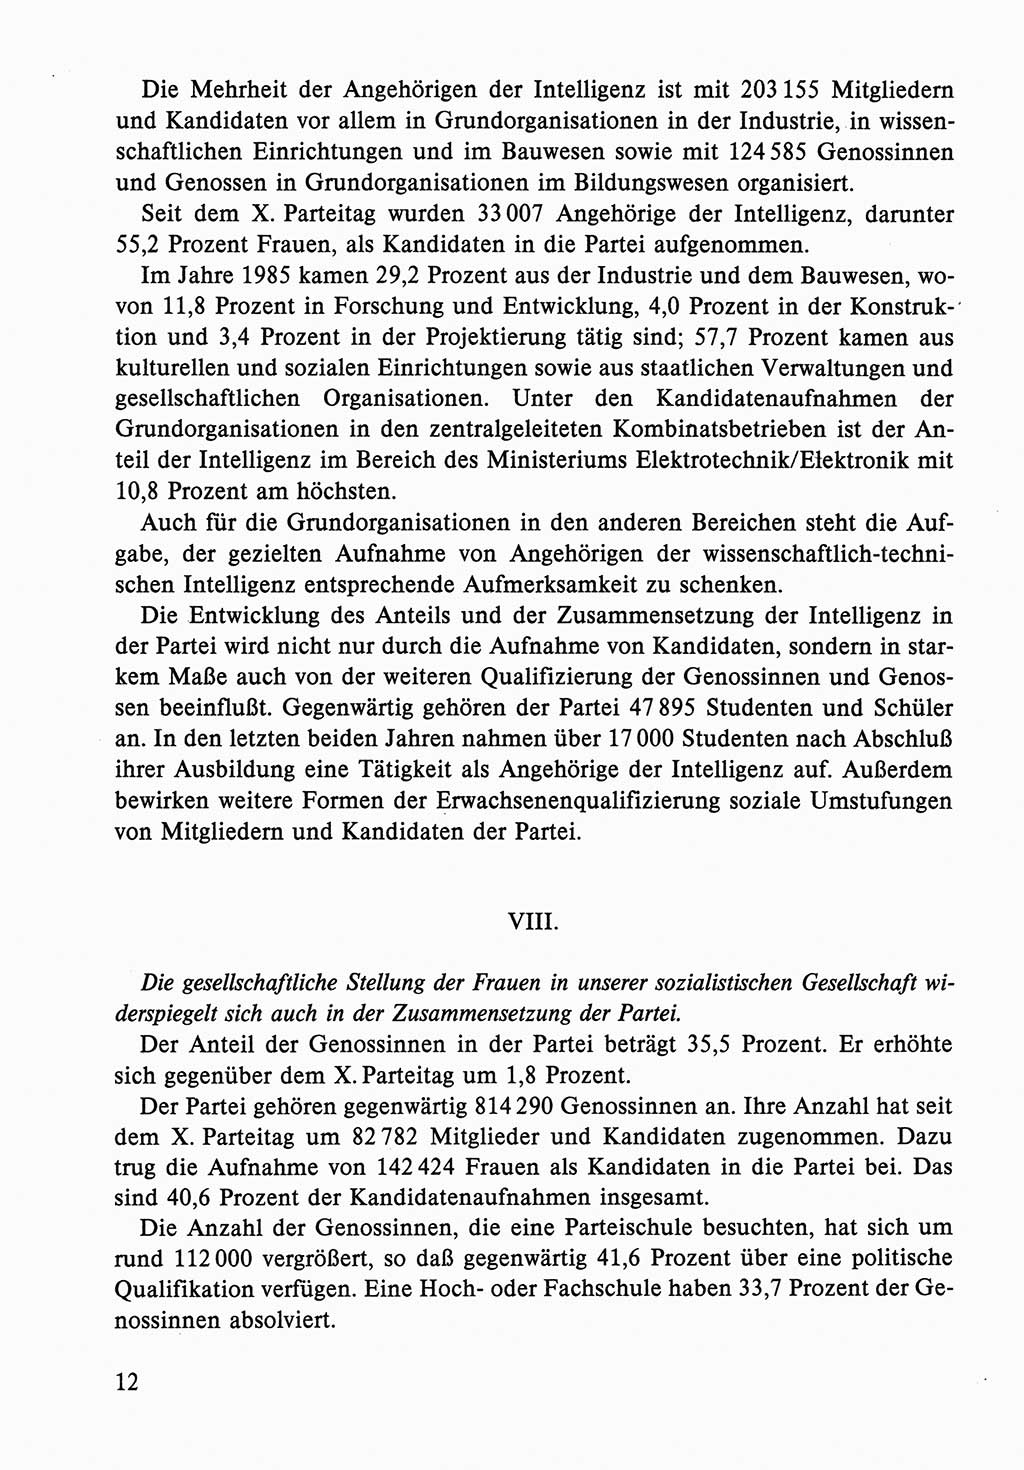 Dokumente der Sozialistischen Einheitspartei Deutschlands (SED) [Deutsche Demokratische Republik (DDR)] 1986-1987, Seite 12 (Dok. SED DDR 1986-1987, S. 12)